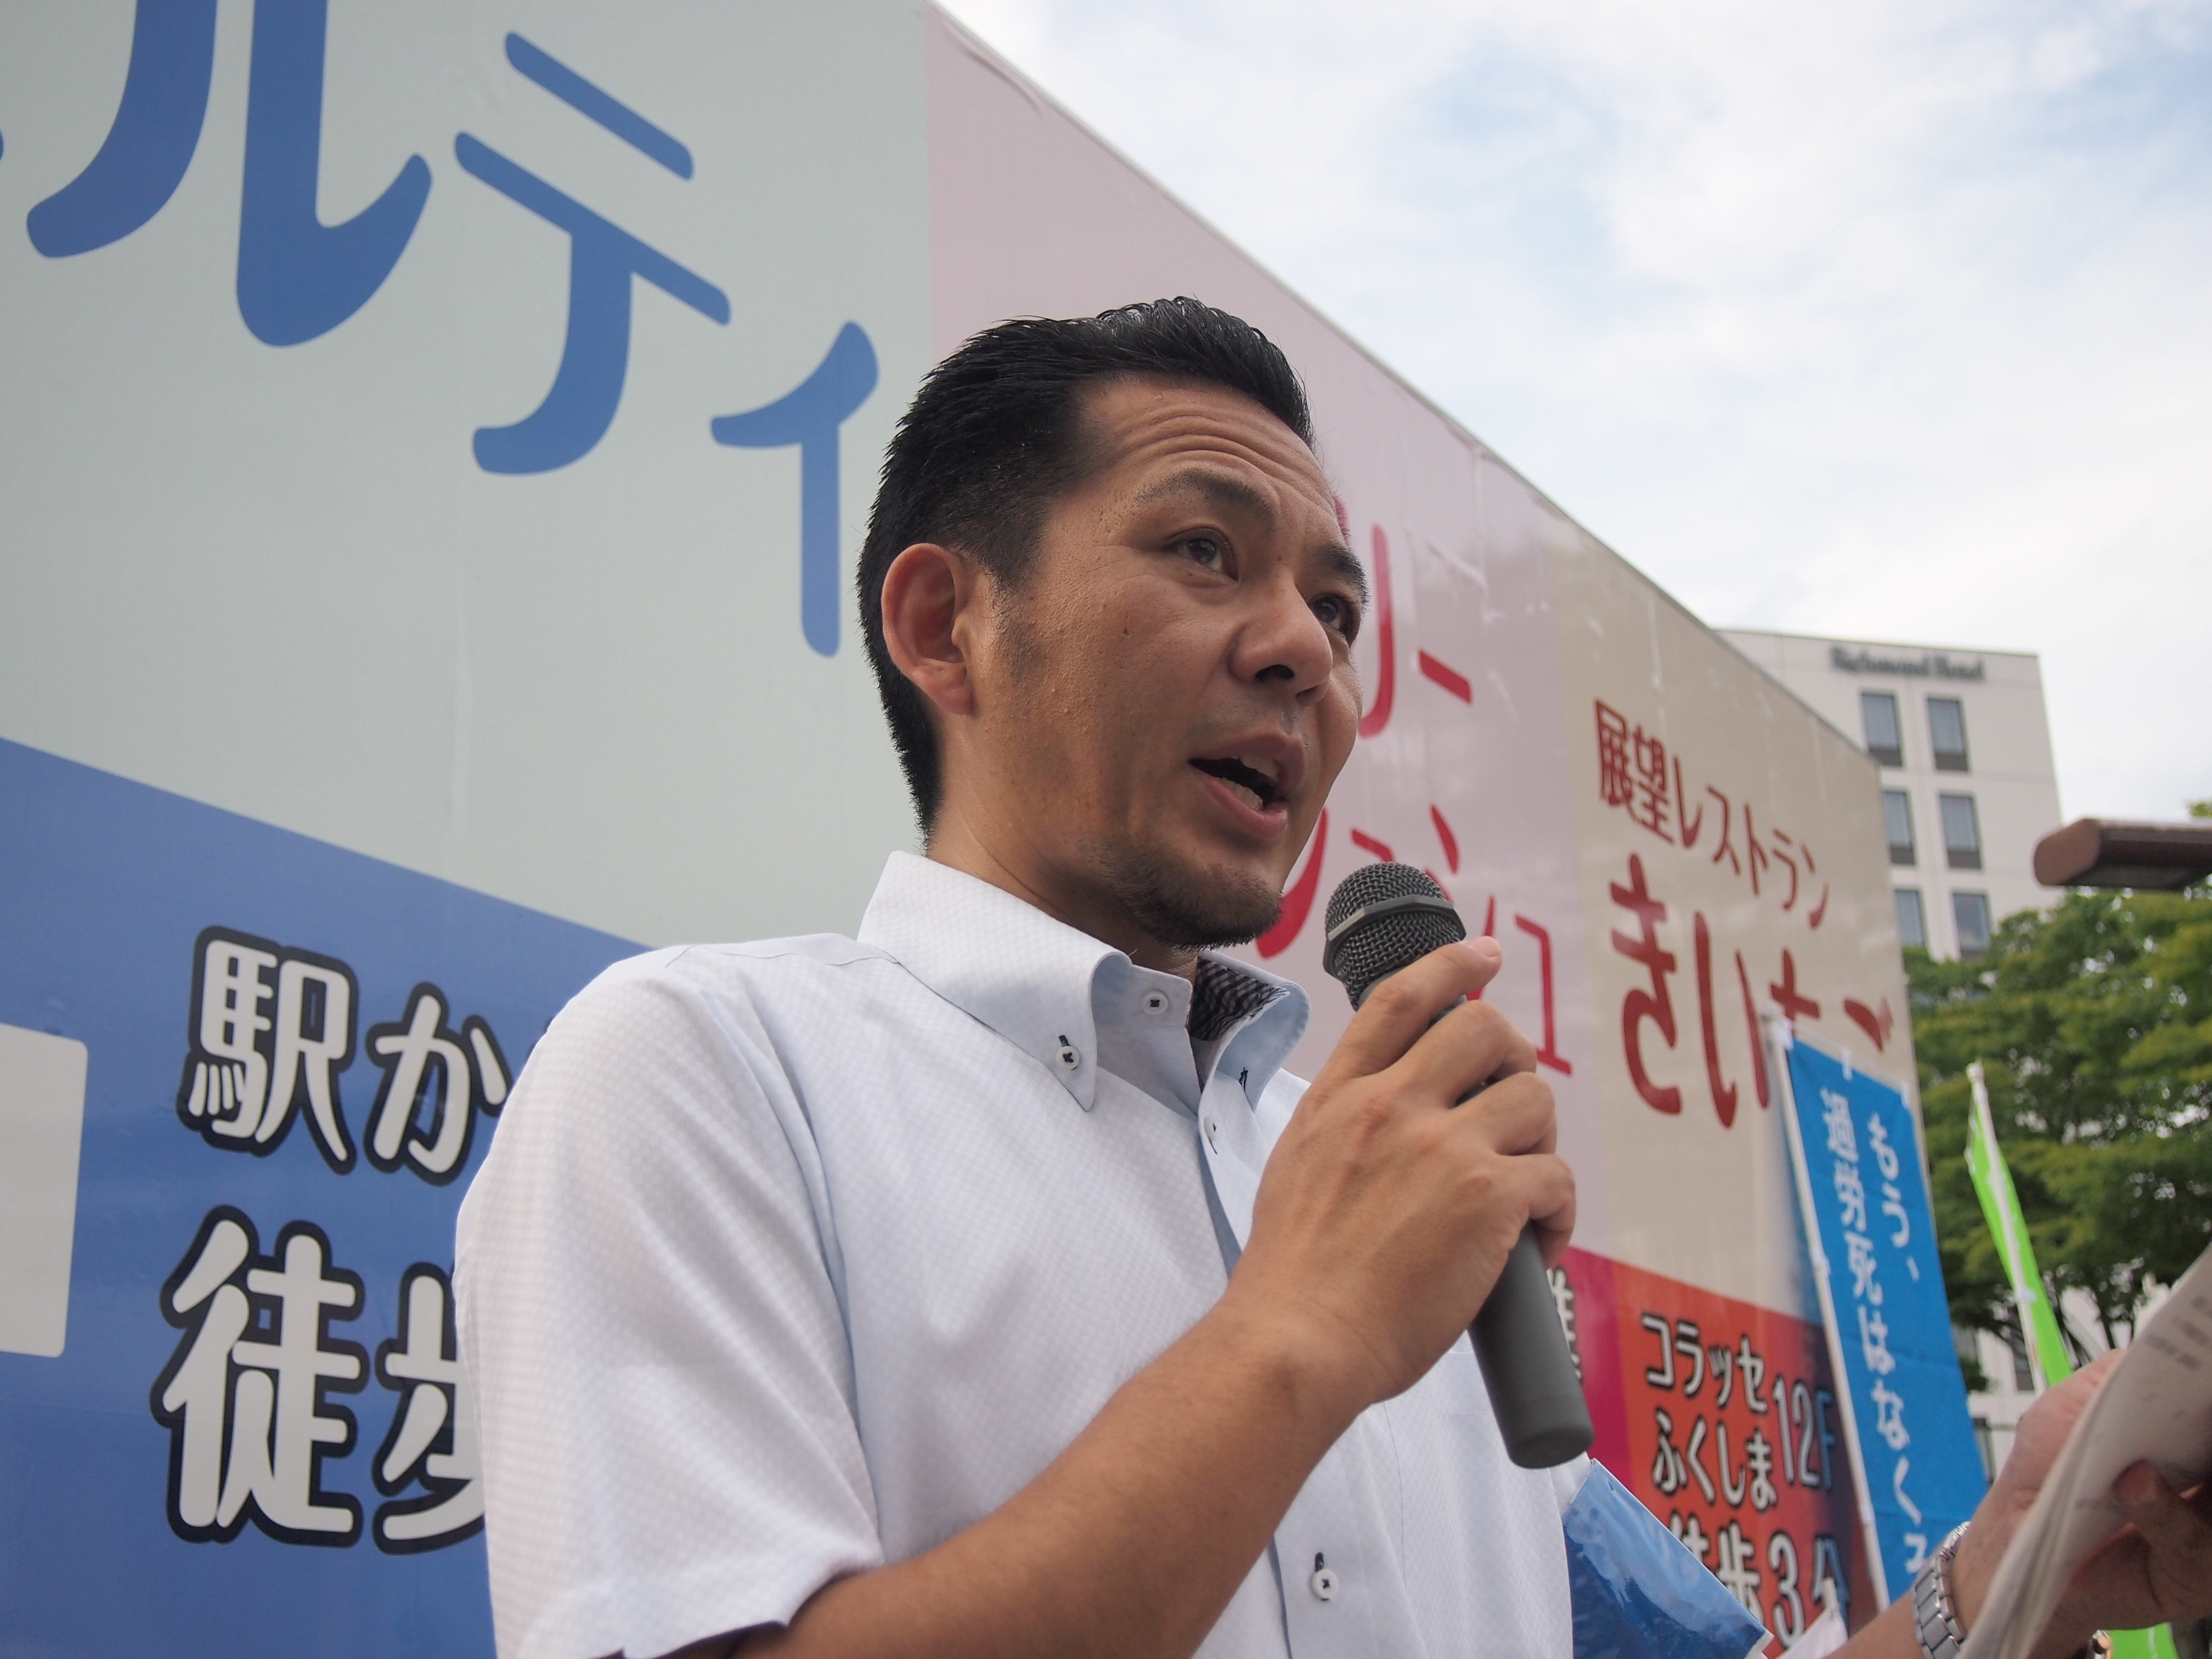 応援団の取り組み「最低賃金の引上げ、恒久平和」について訴える 佐藤 裕 連合福島副会長